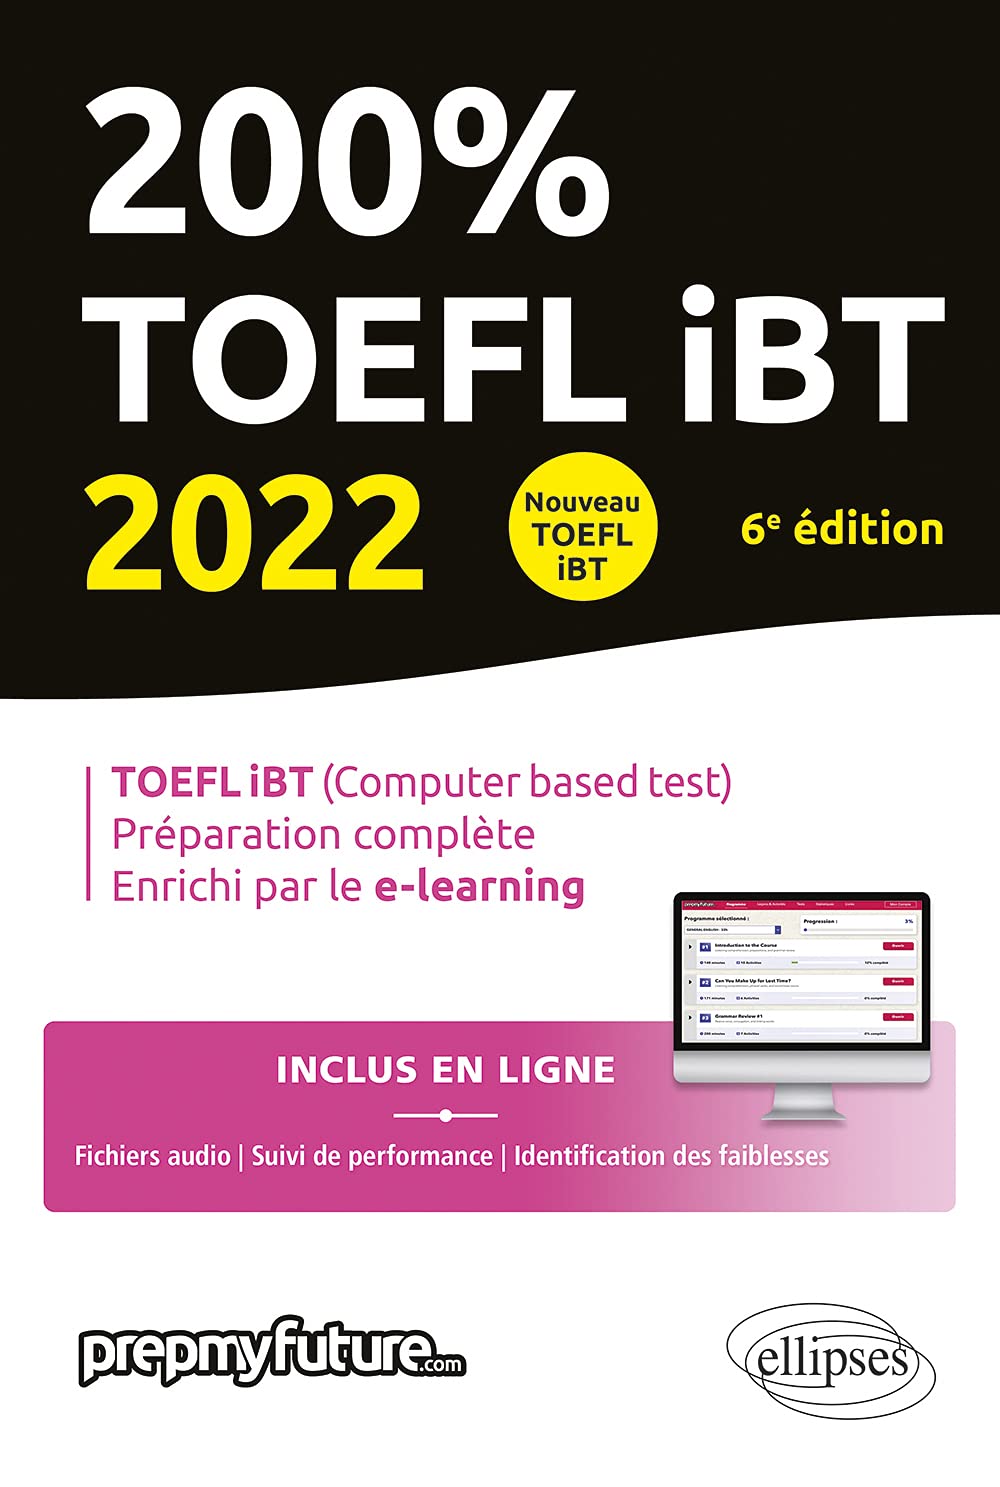 TOEFL iBT 2022